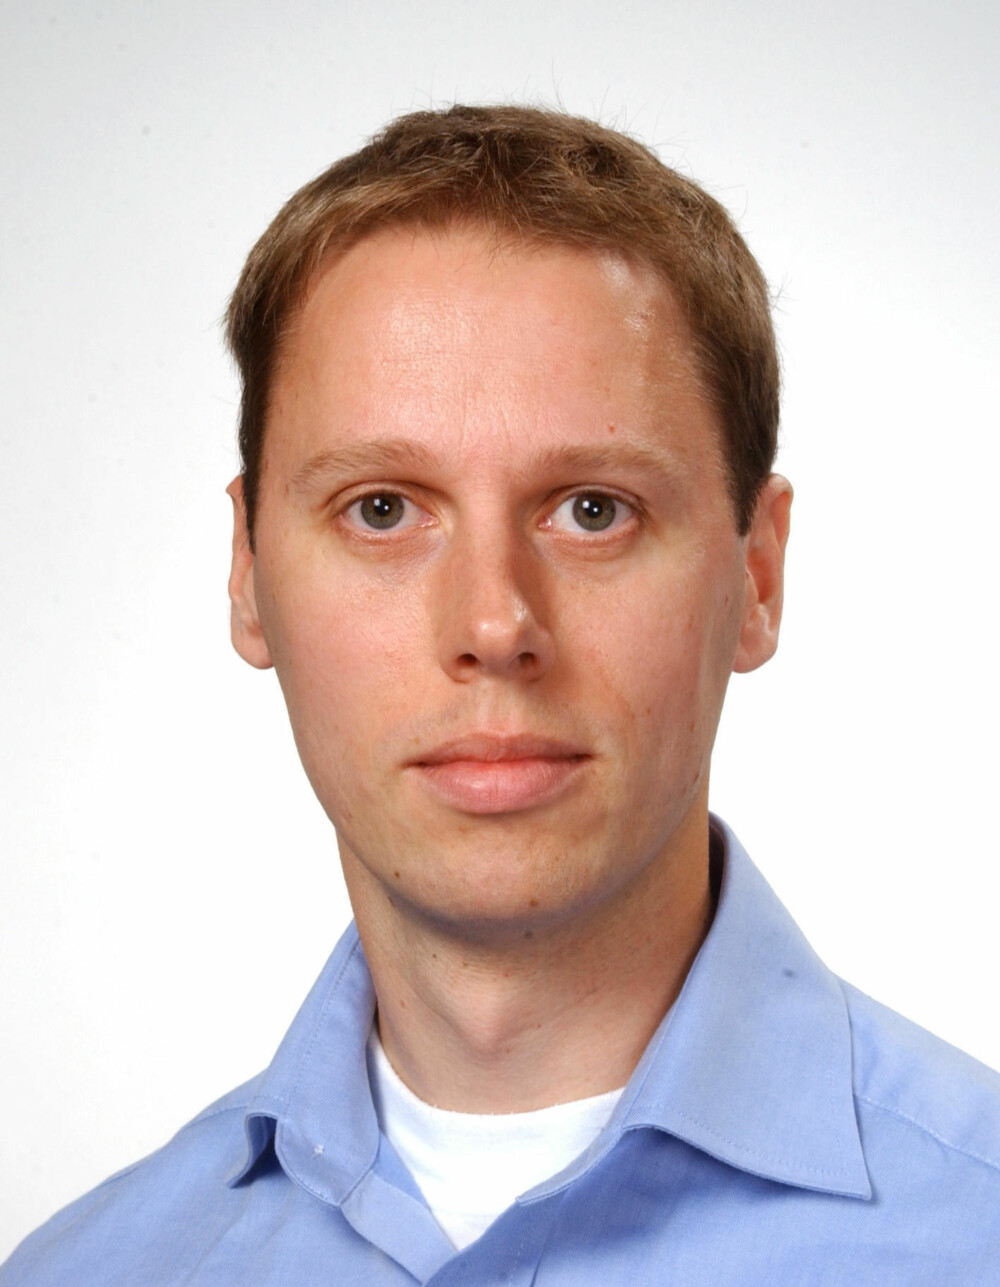 FORSKER: Morten Hansbø er forsker ved FFI. Han har robotikk og kunstig intelligens som spesialfelt.